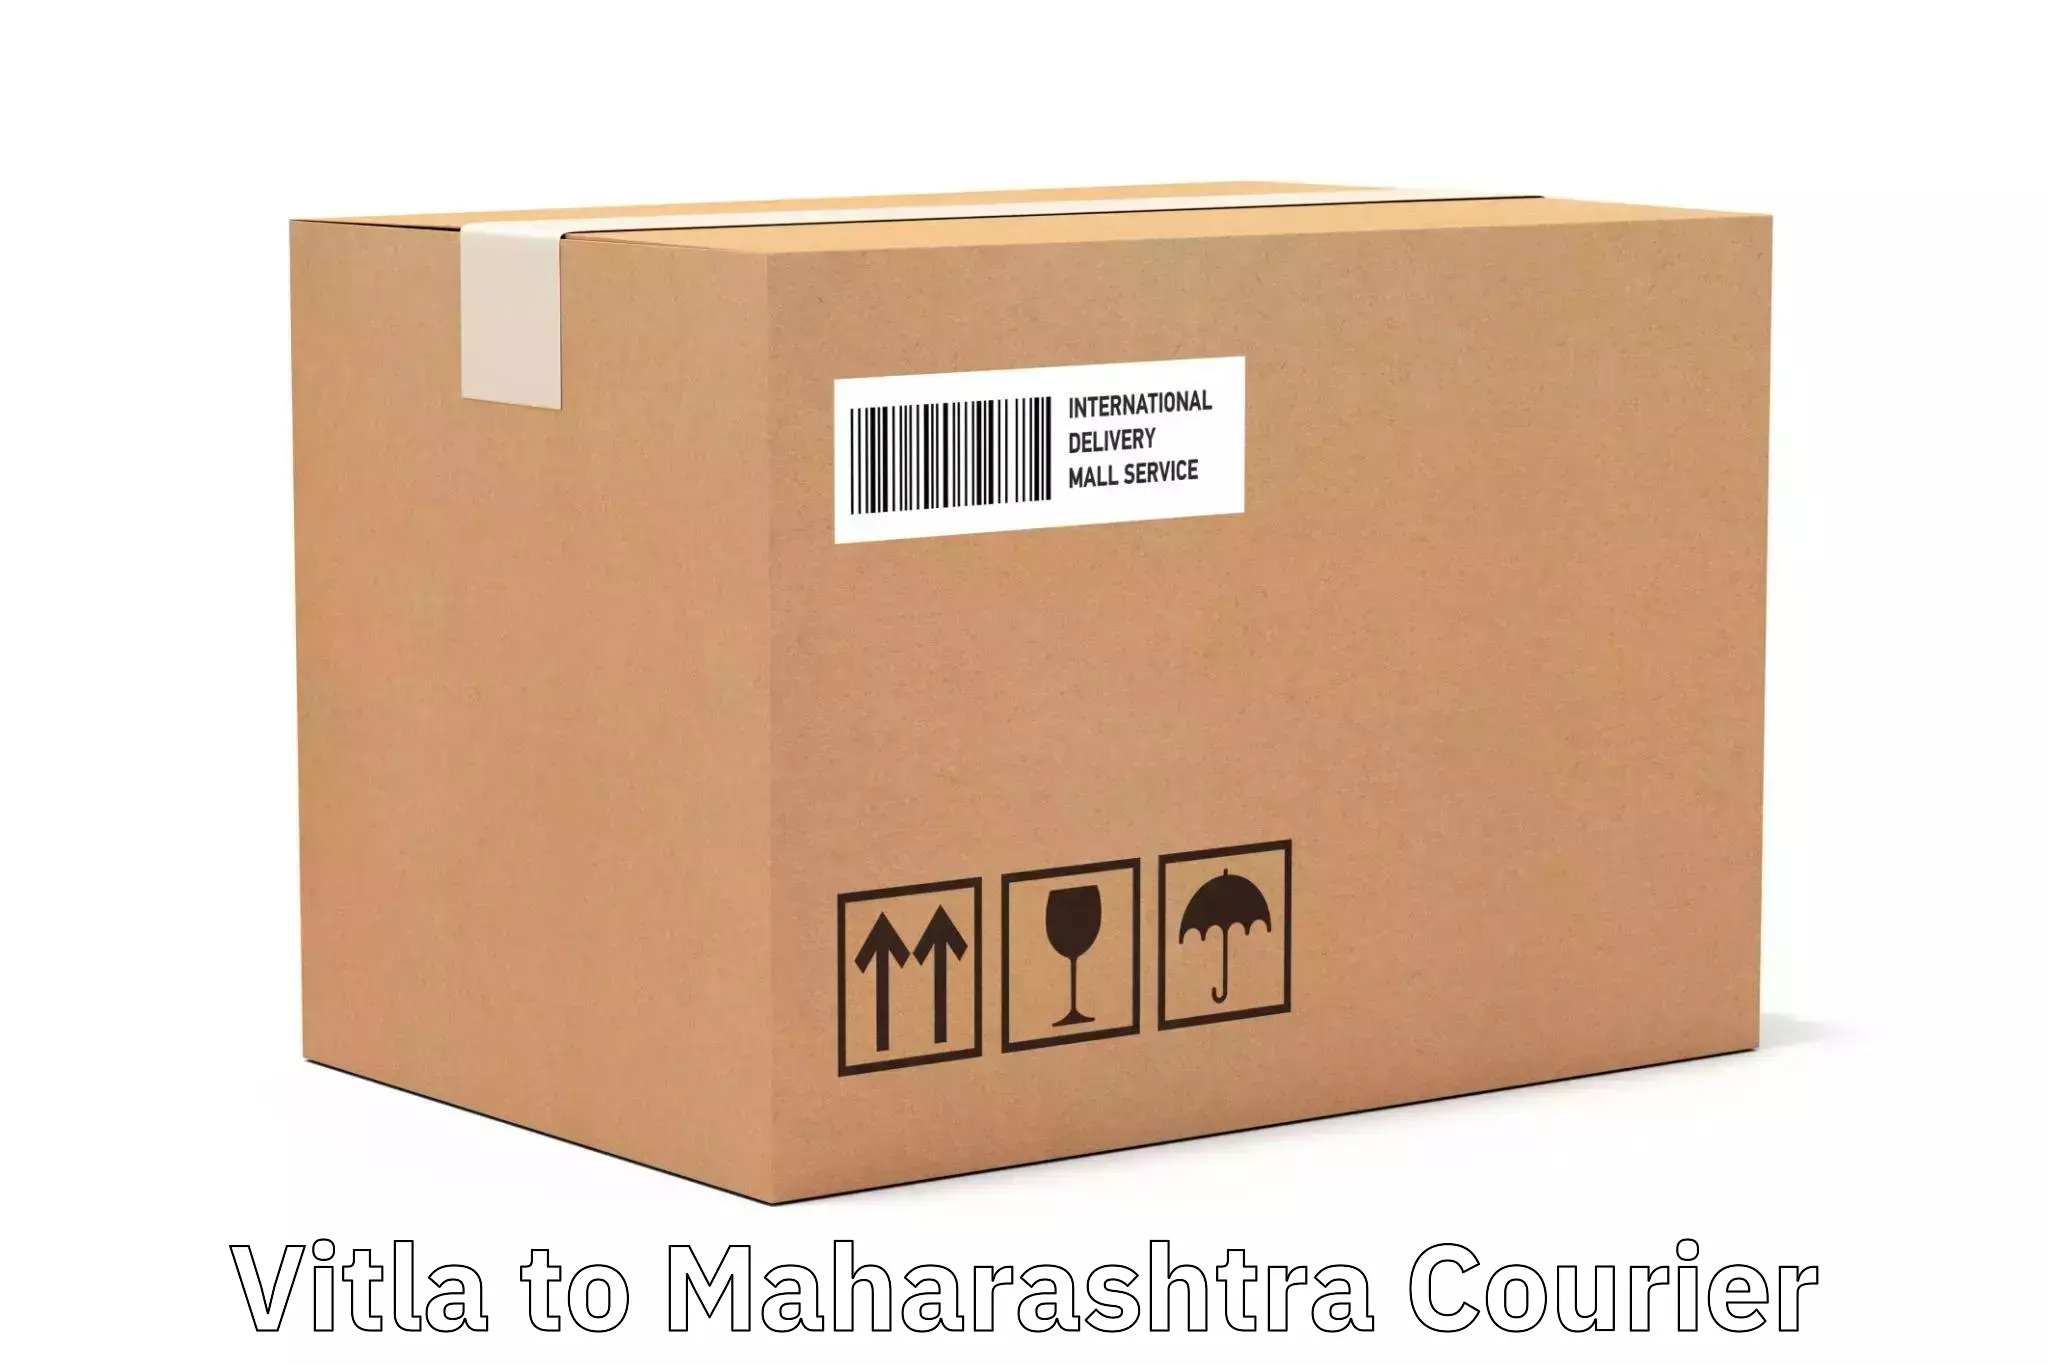 Regular parcel service Vitla to IIIT Nagpur